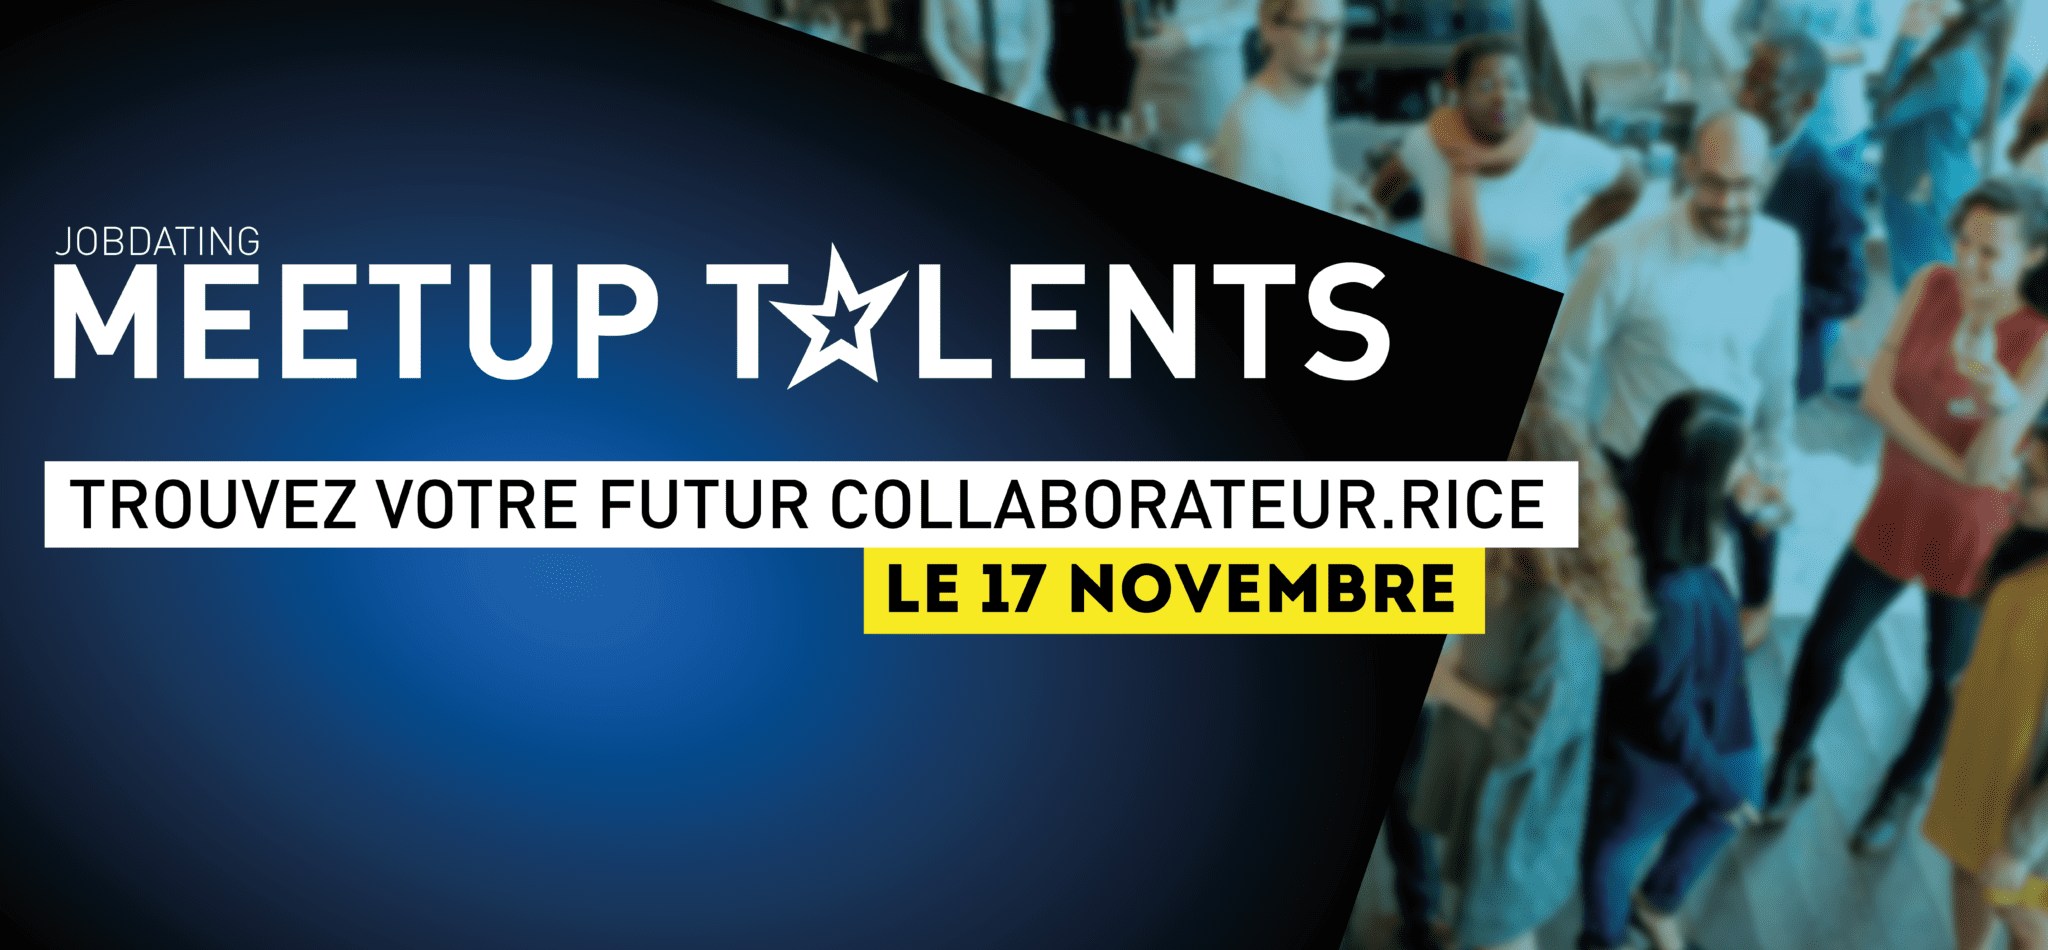 Meetup Talents 17 novembre plaine images